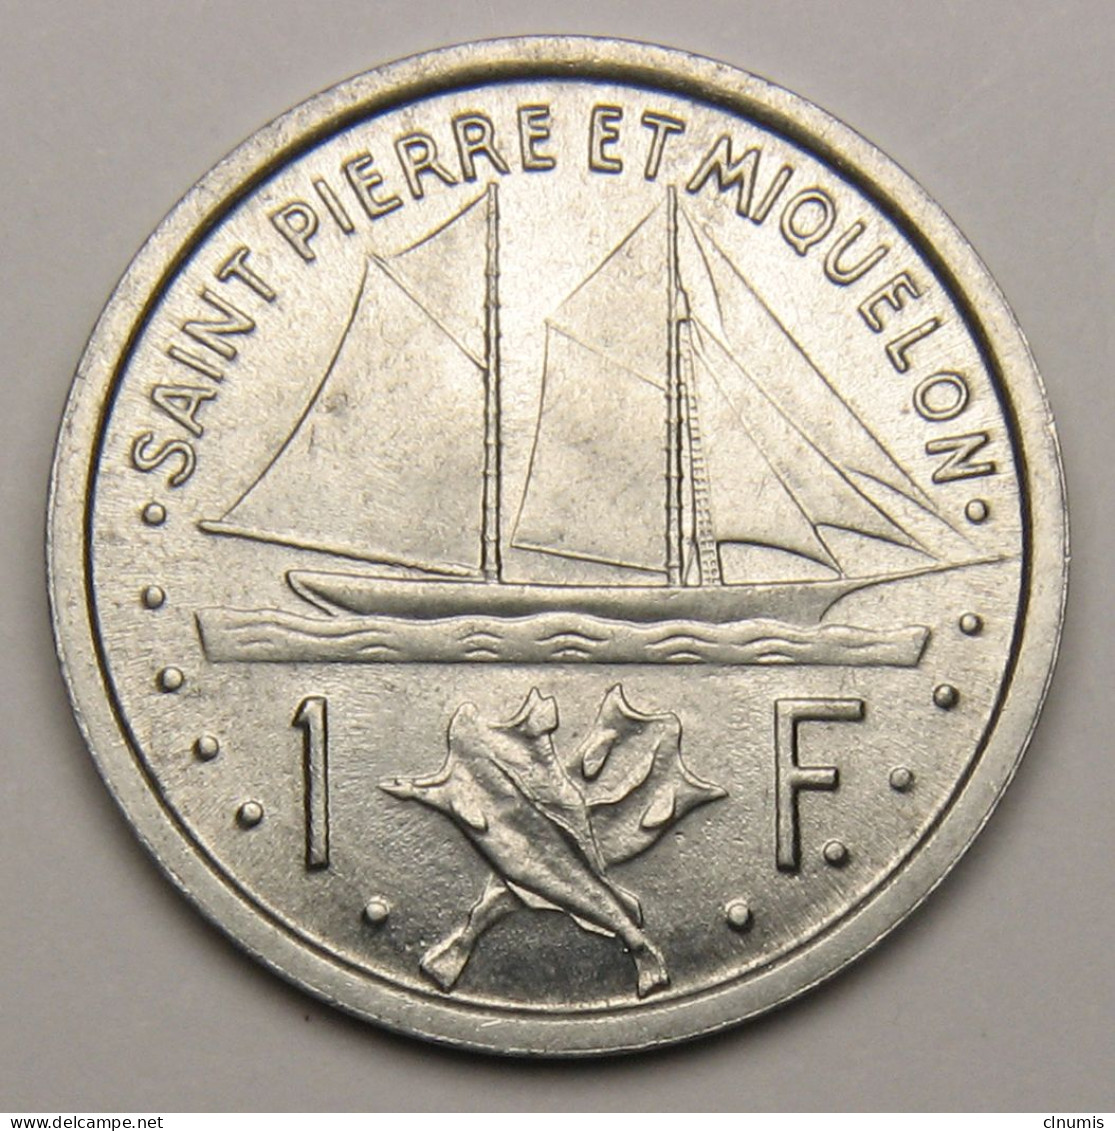 ASSEZ RARE : Saint-Pierre-et-Miquelon, 1 Franc Union Française, 1948 - Saint-Pierre-et-Miquelon